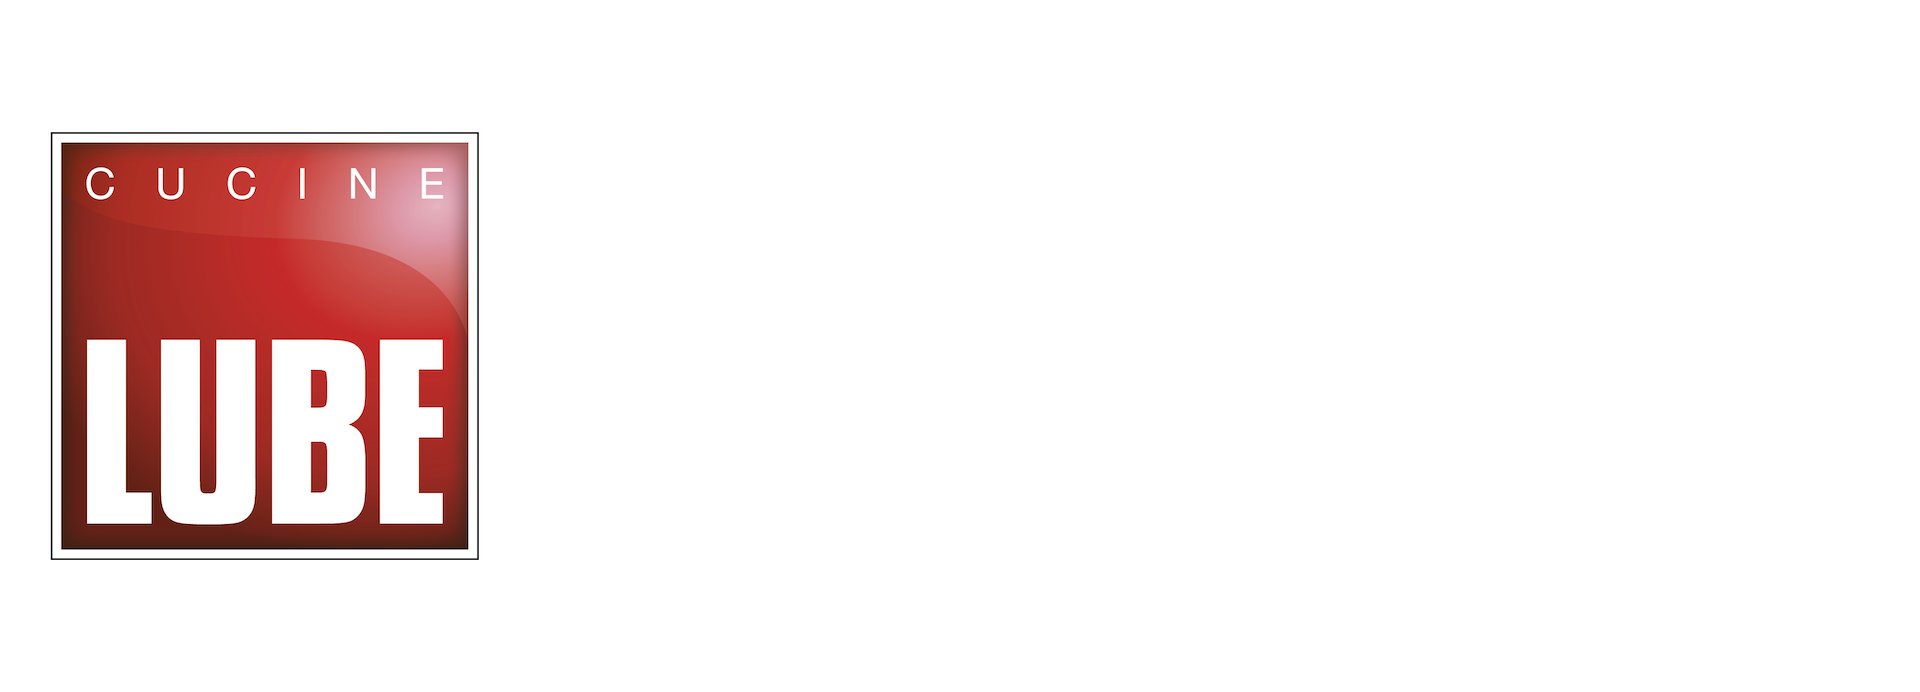 Lube Store Crema